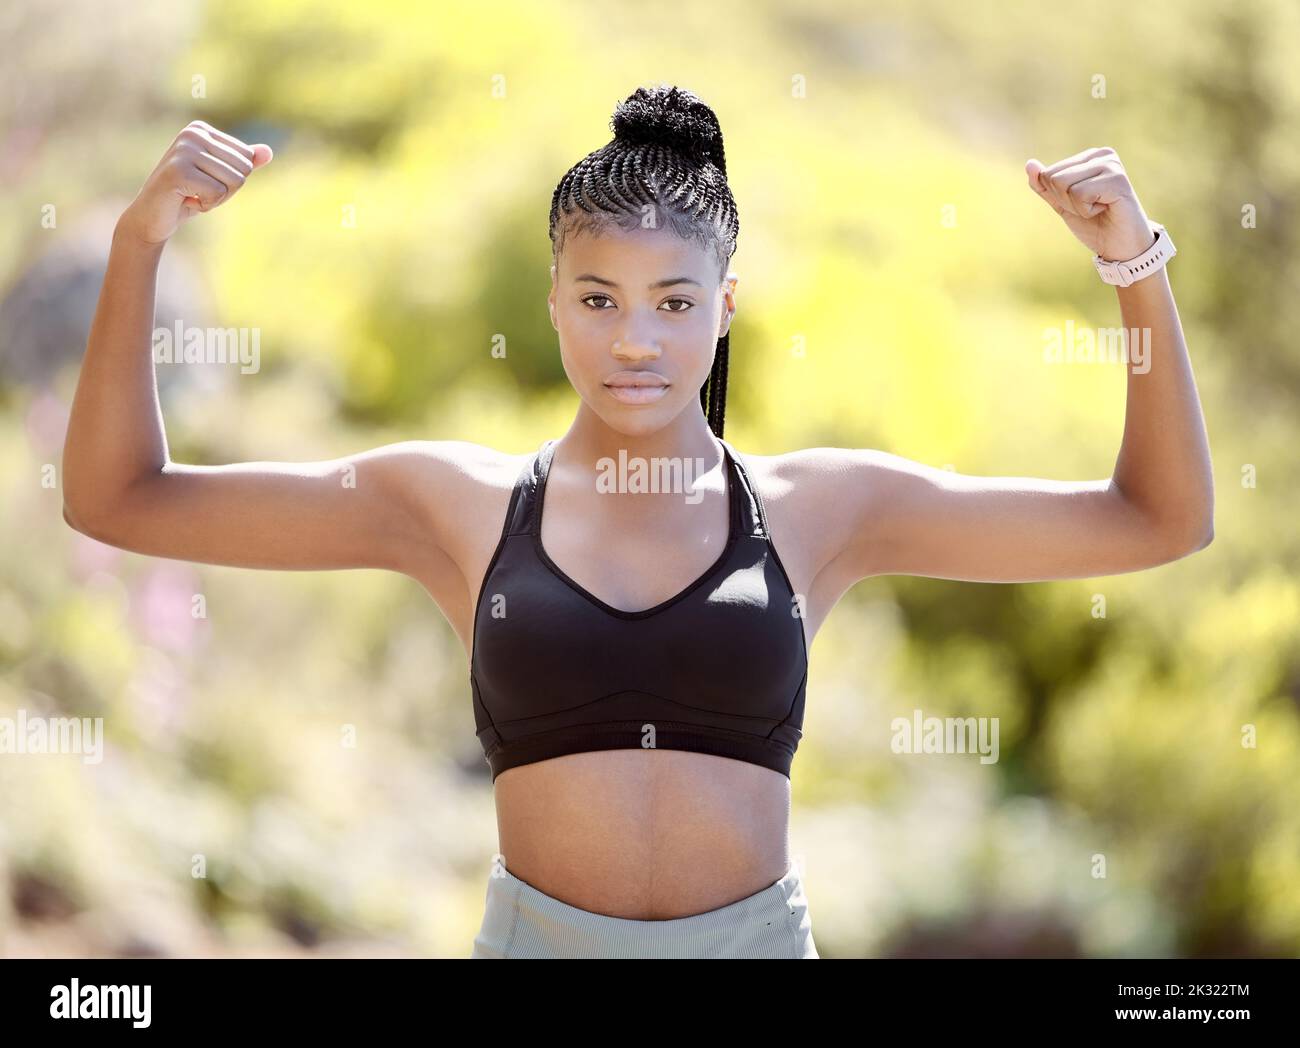 Fitness, forti muscoli del braccio una donna nera dopo un allenamento sportivo, allenamento e esercizio in natura. Ritratto di una atleta sana con Foto Stock